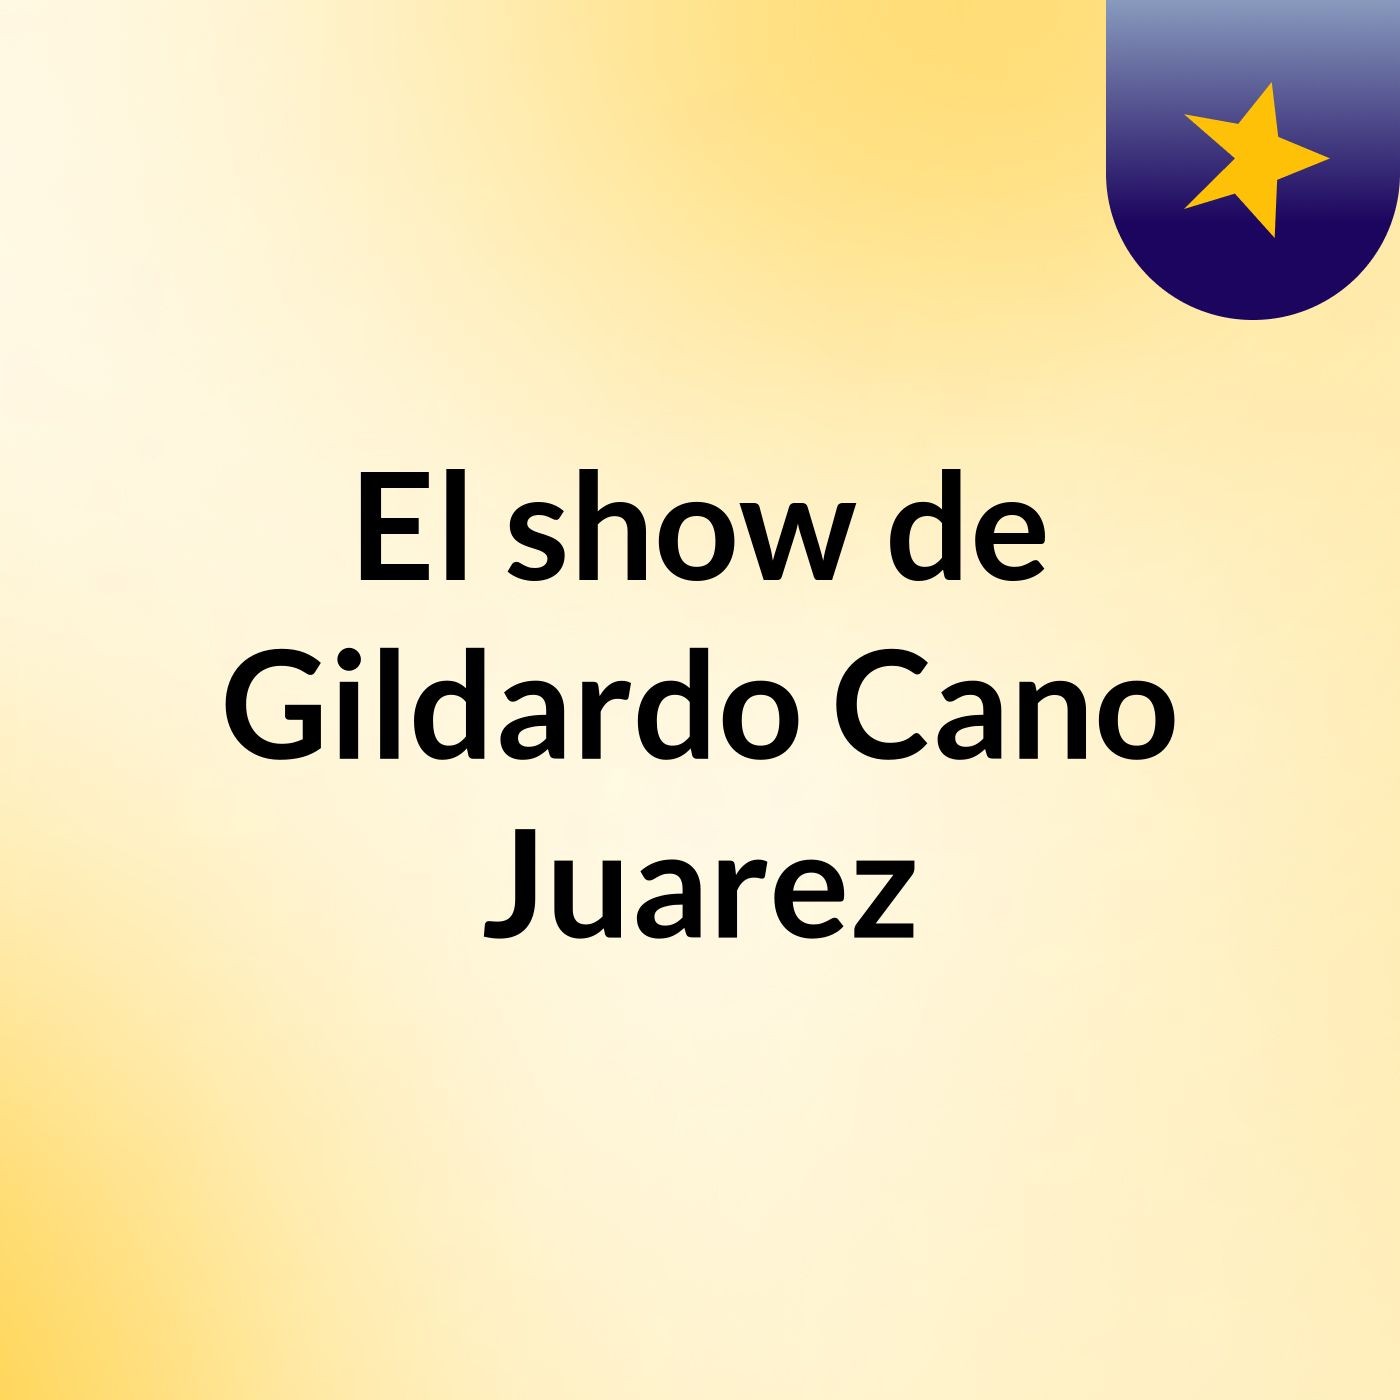 El show de Gildardo Cano Juarez